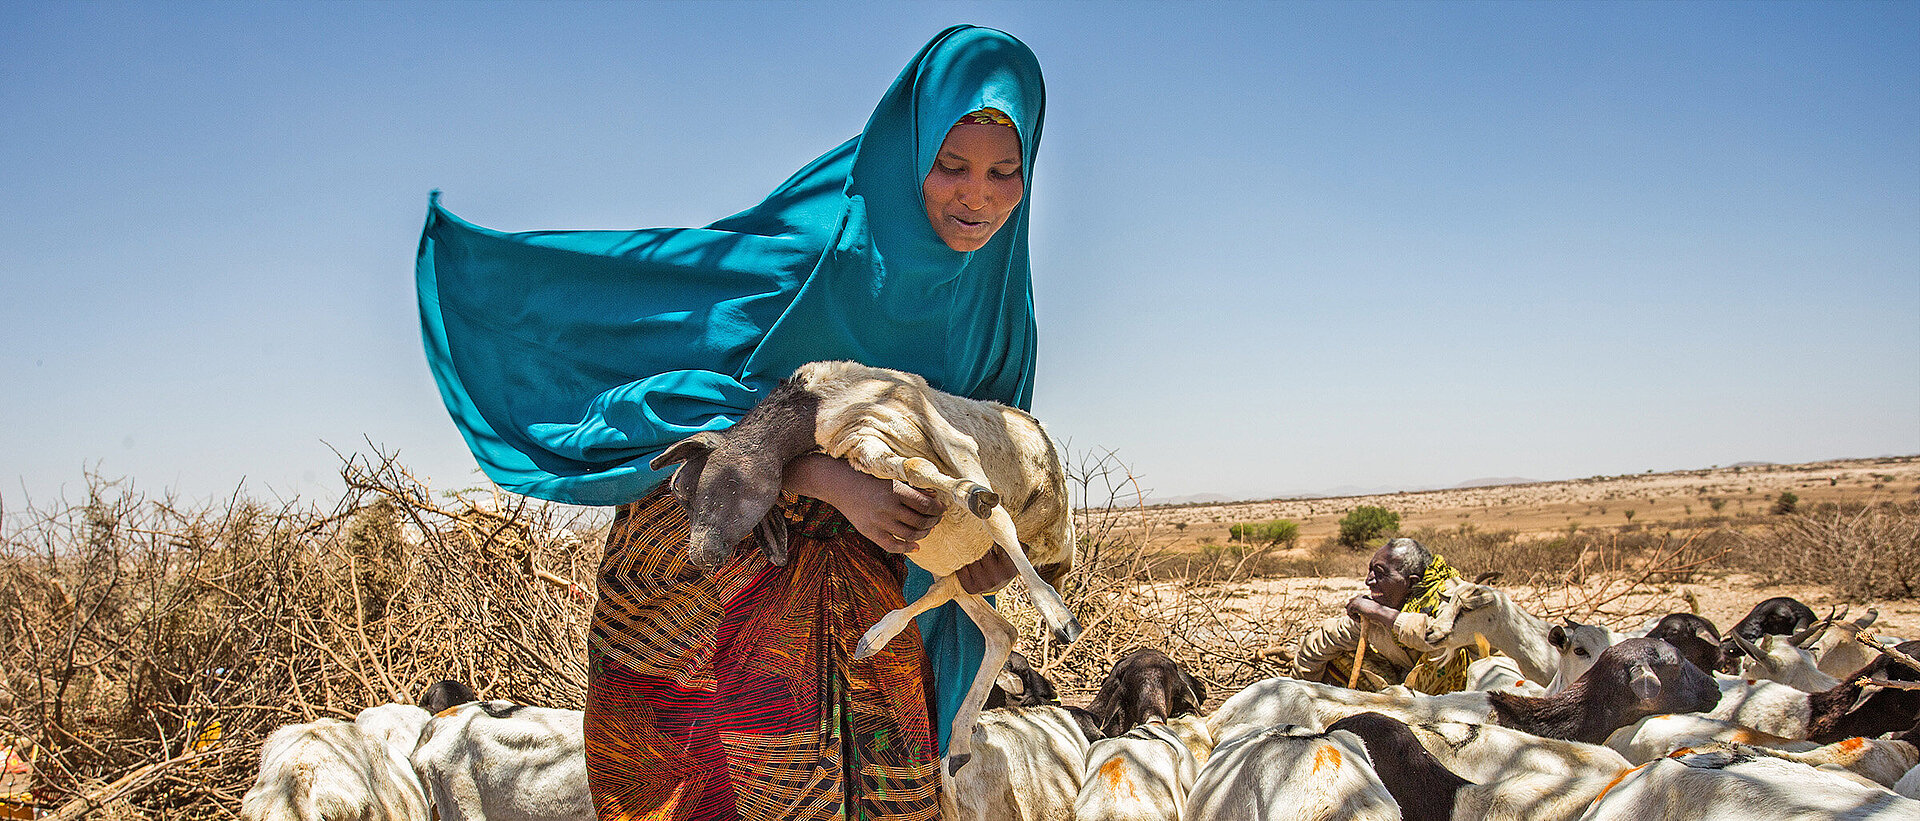 Frau mit Ziegen in Somalia